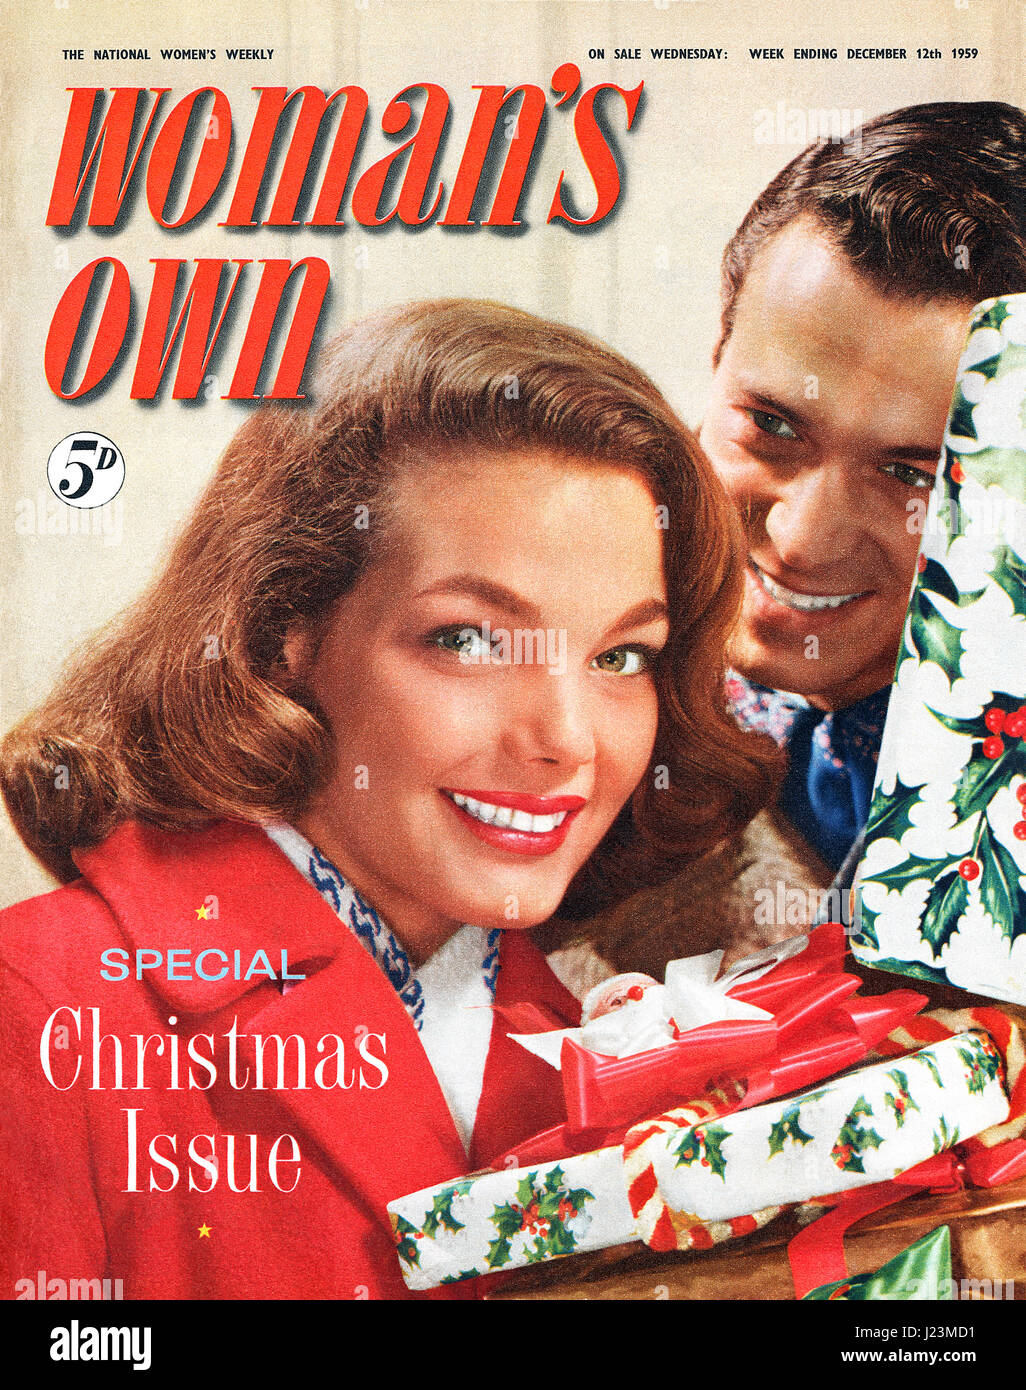 Couverture du magazine de la femme pour la semaine se terminant le 12 décembre 1959. Numéro spécial de Noël. Banque D'Images